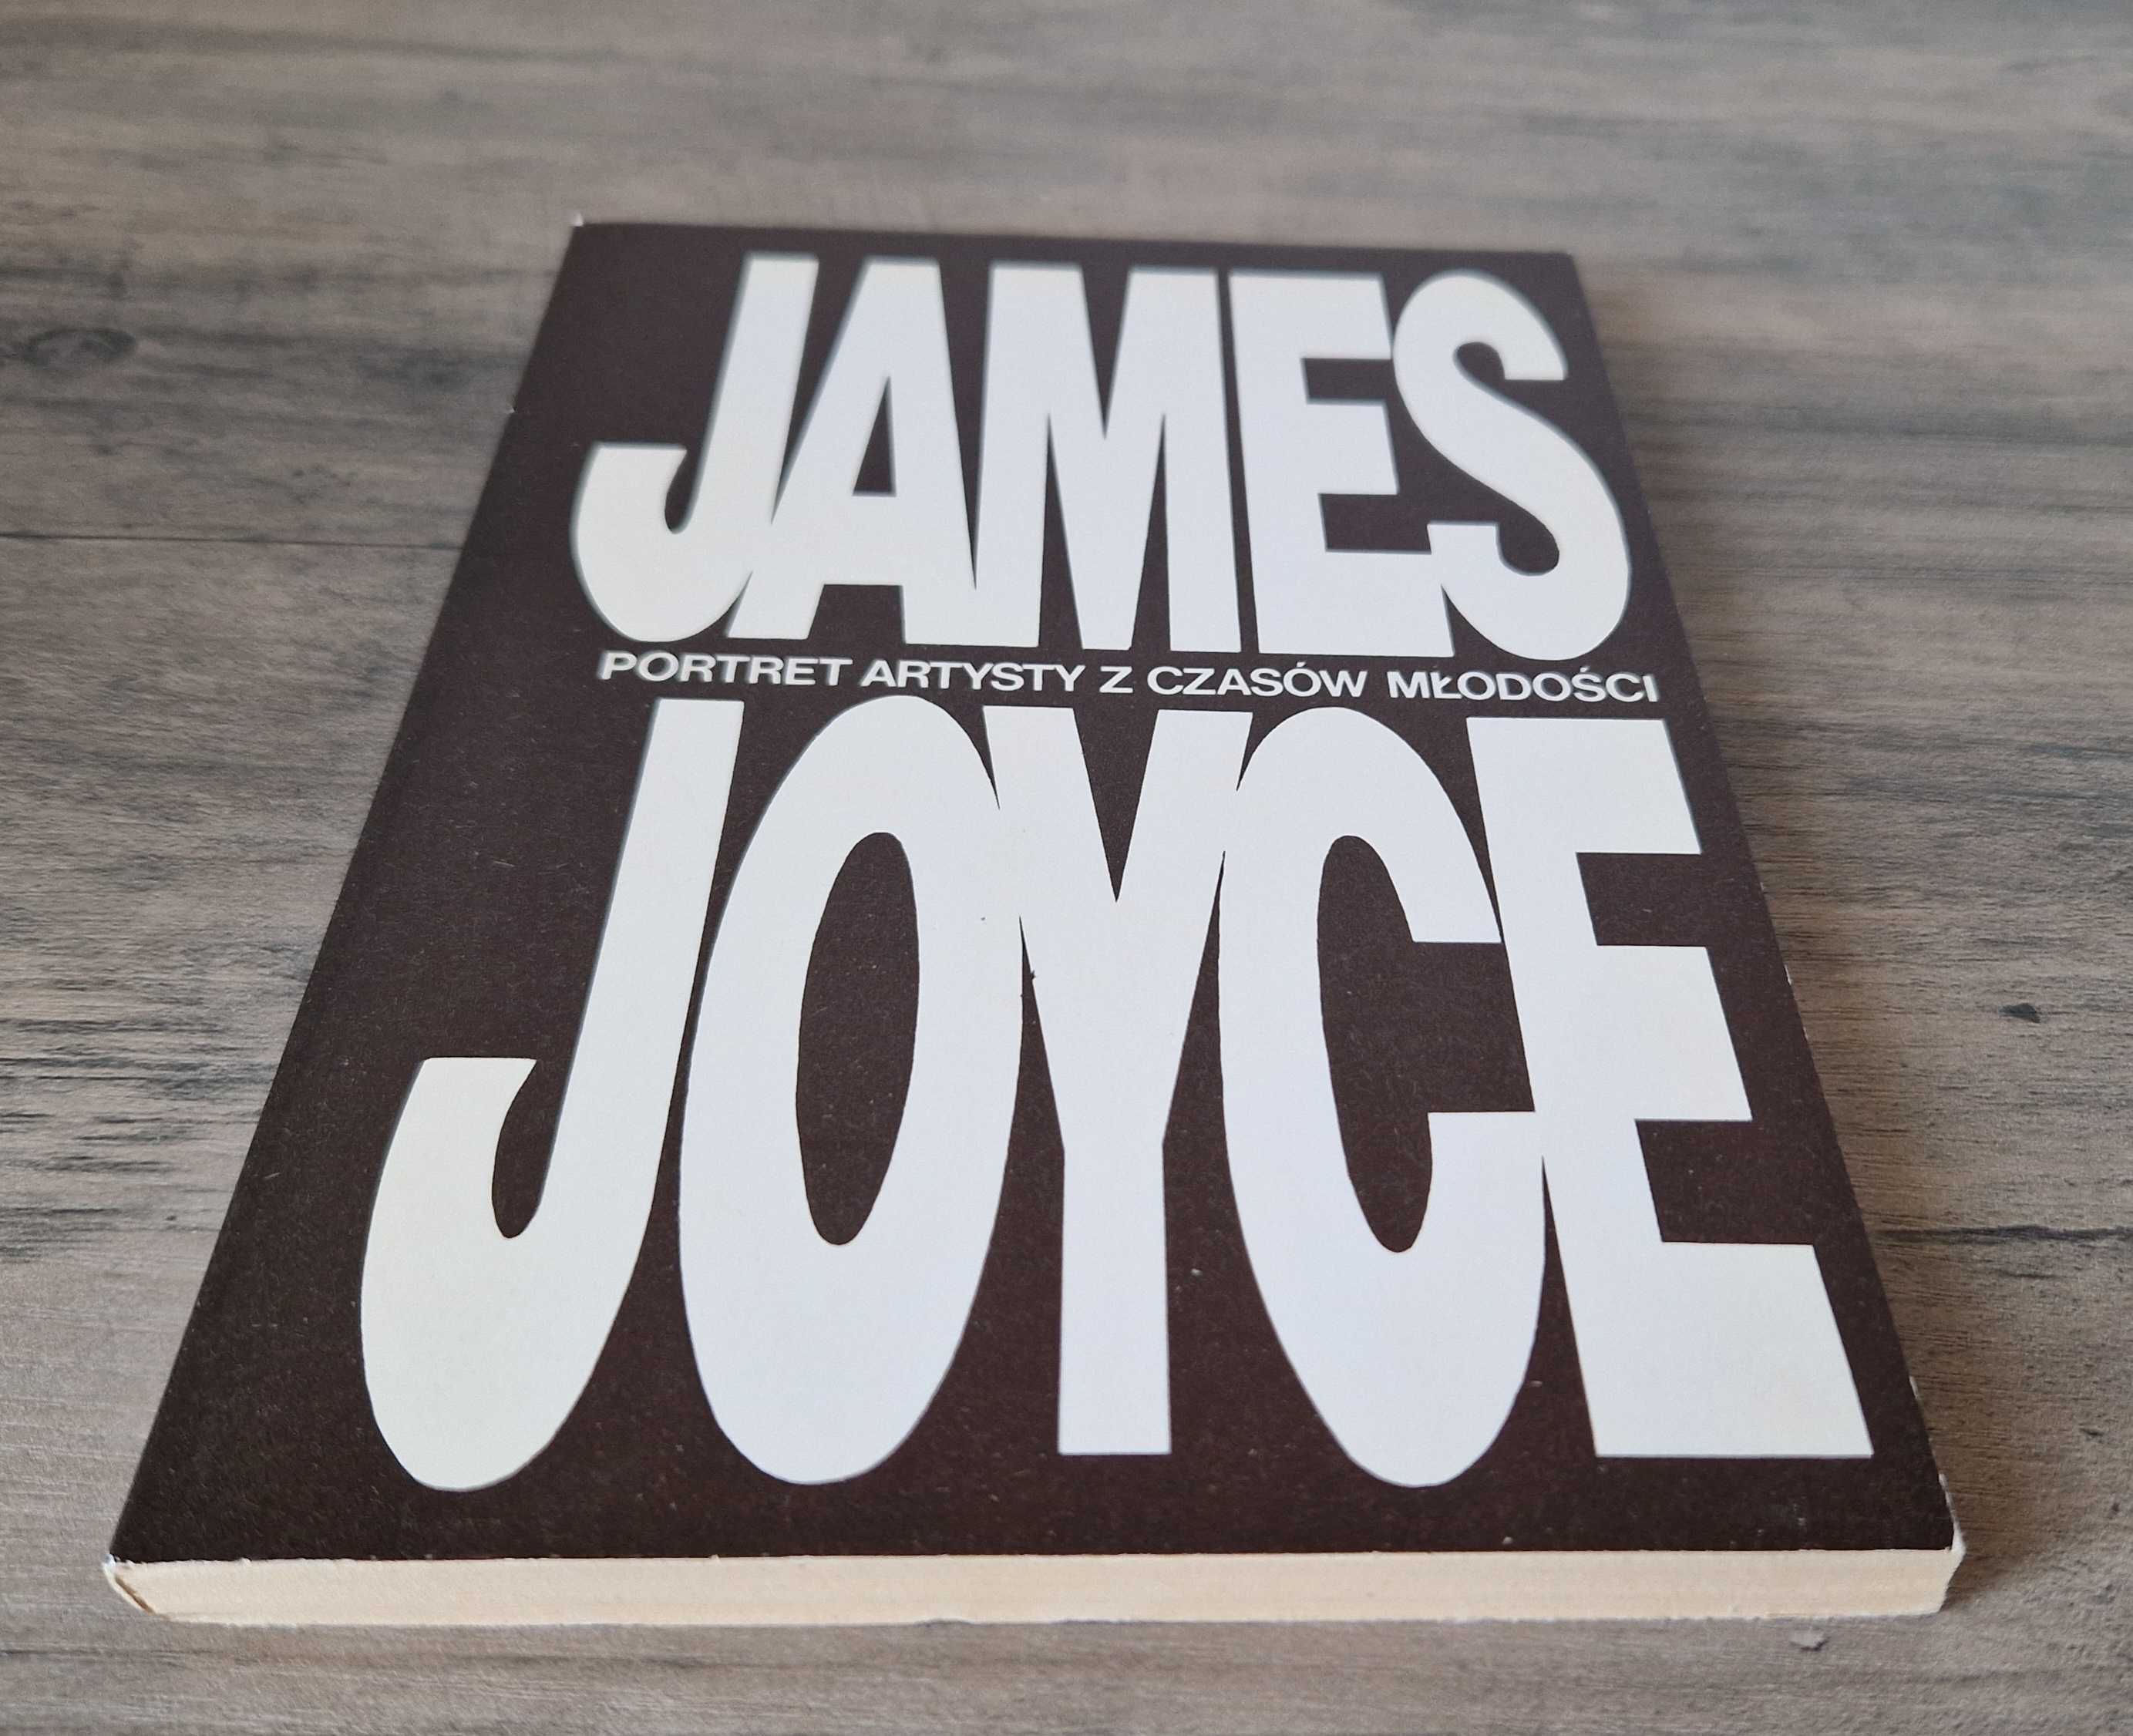 Portret artysty z czasów młodości James Joyce